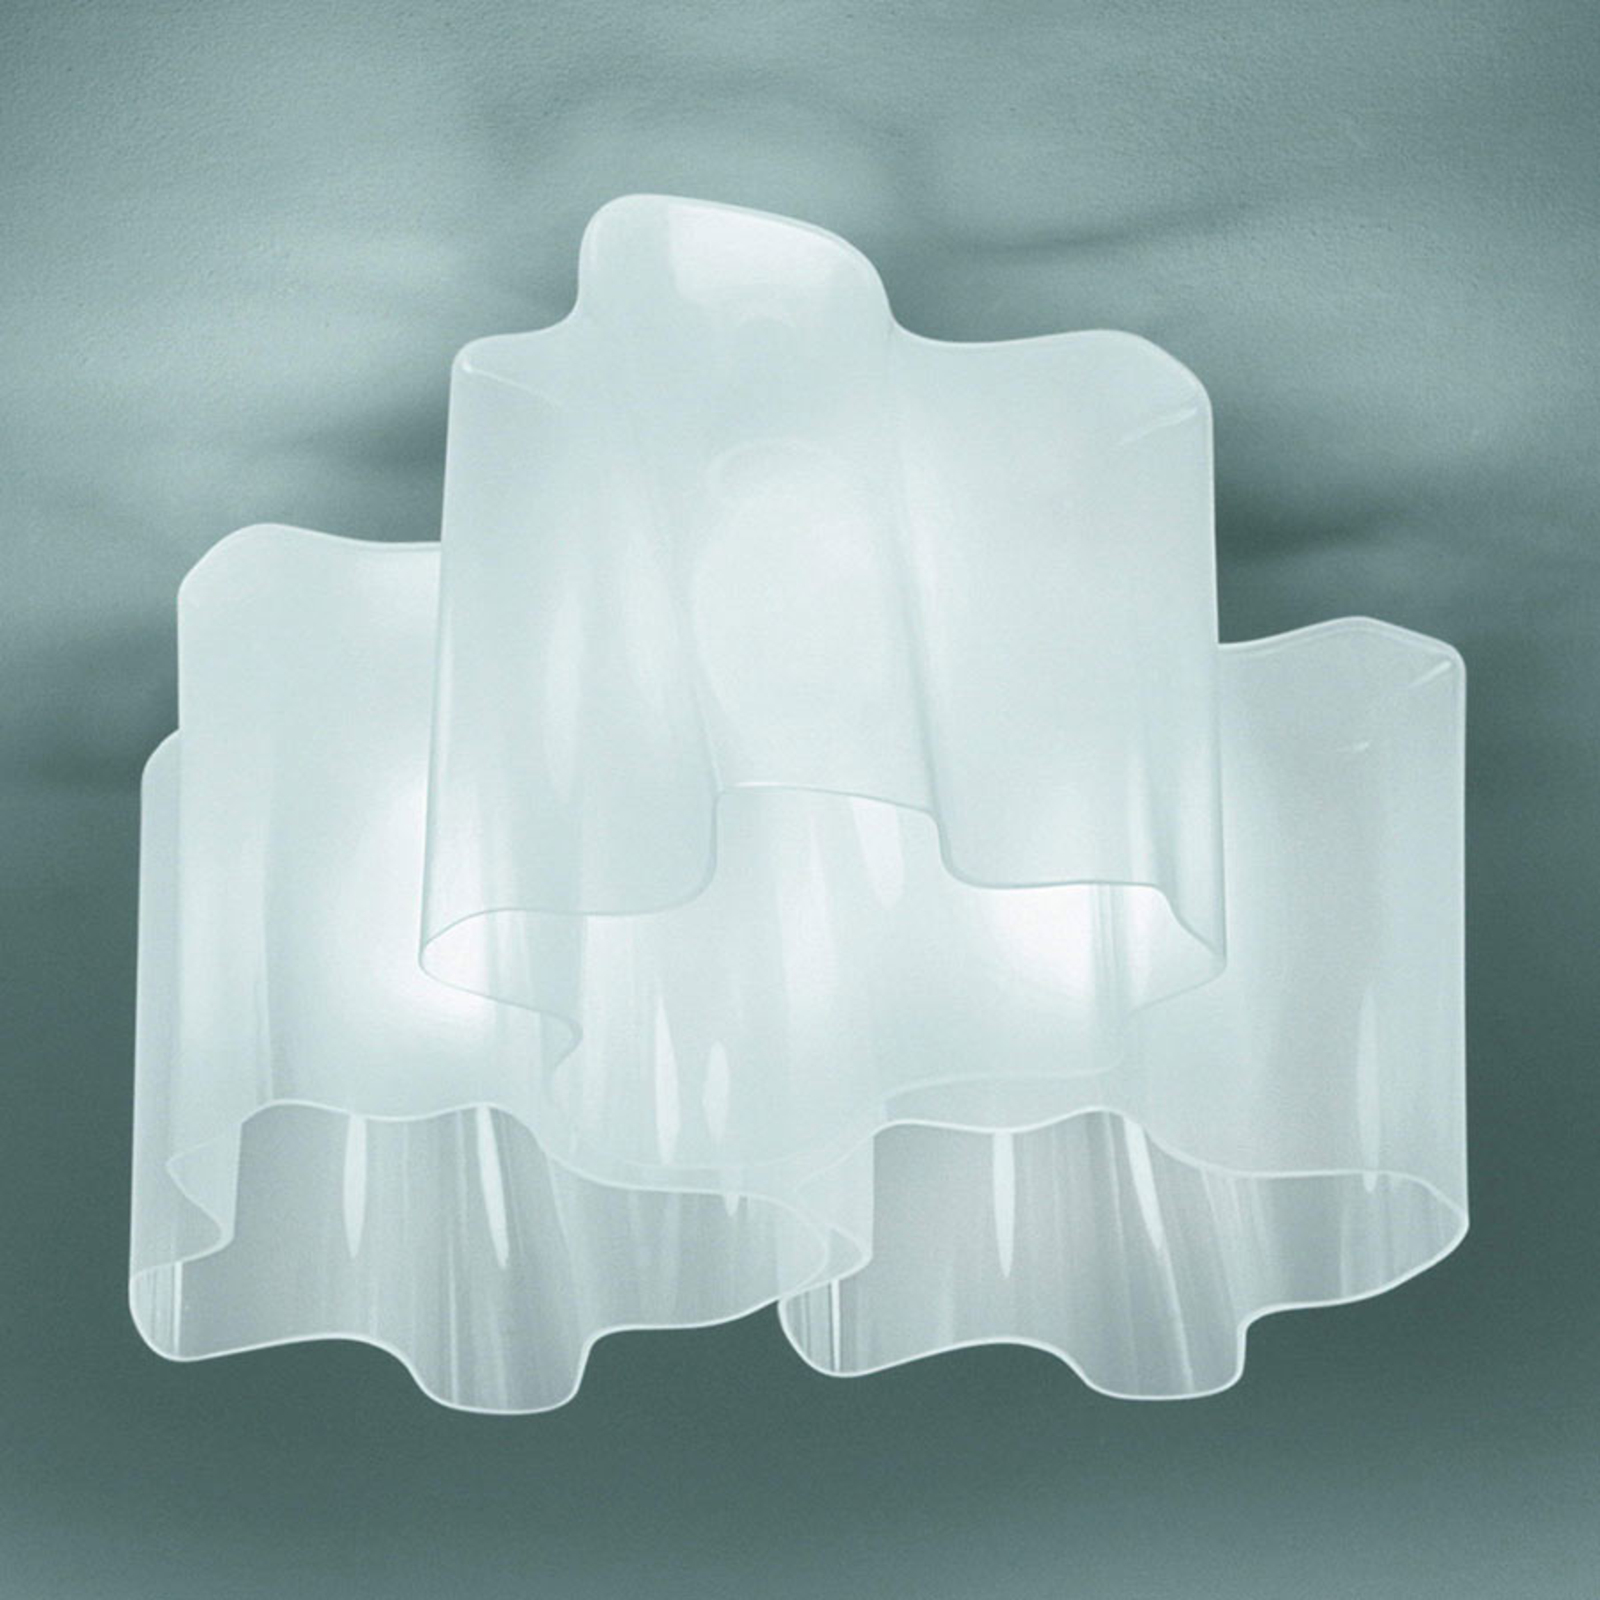 Artemide Logico Deckenlampe 3fl 120° 66x66 cm weiß